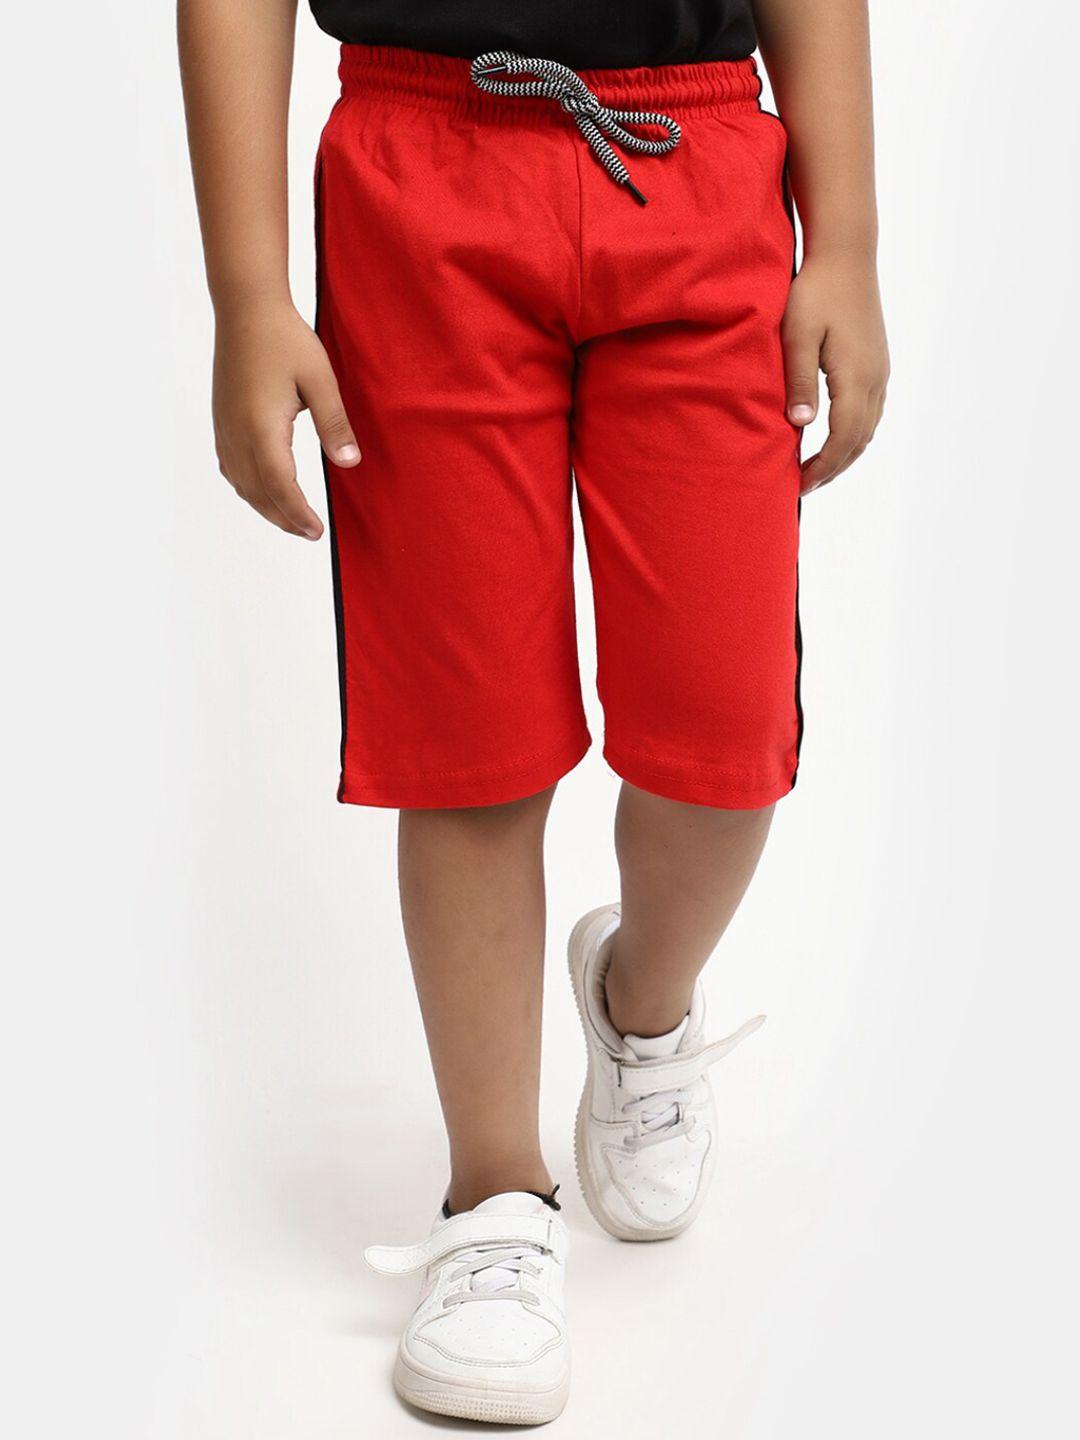 v-mart-boys-cotton-shorts